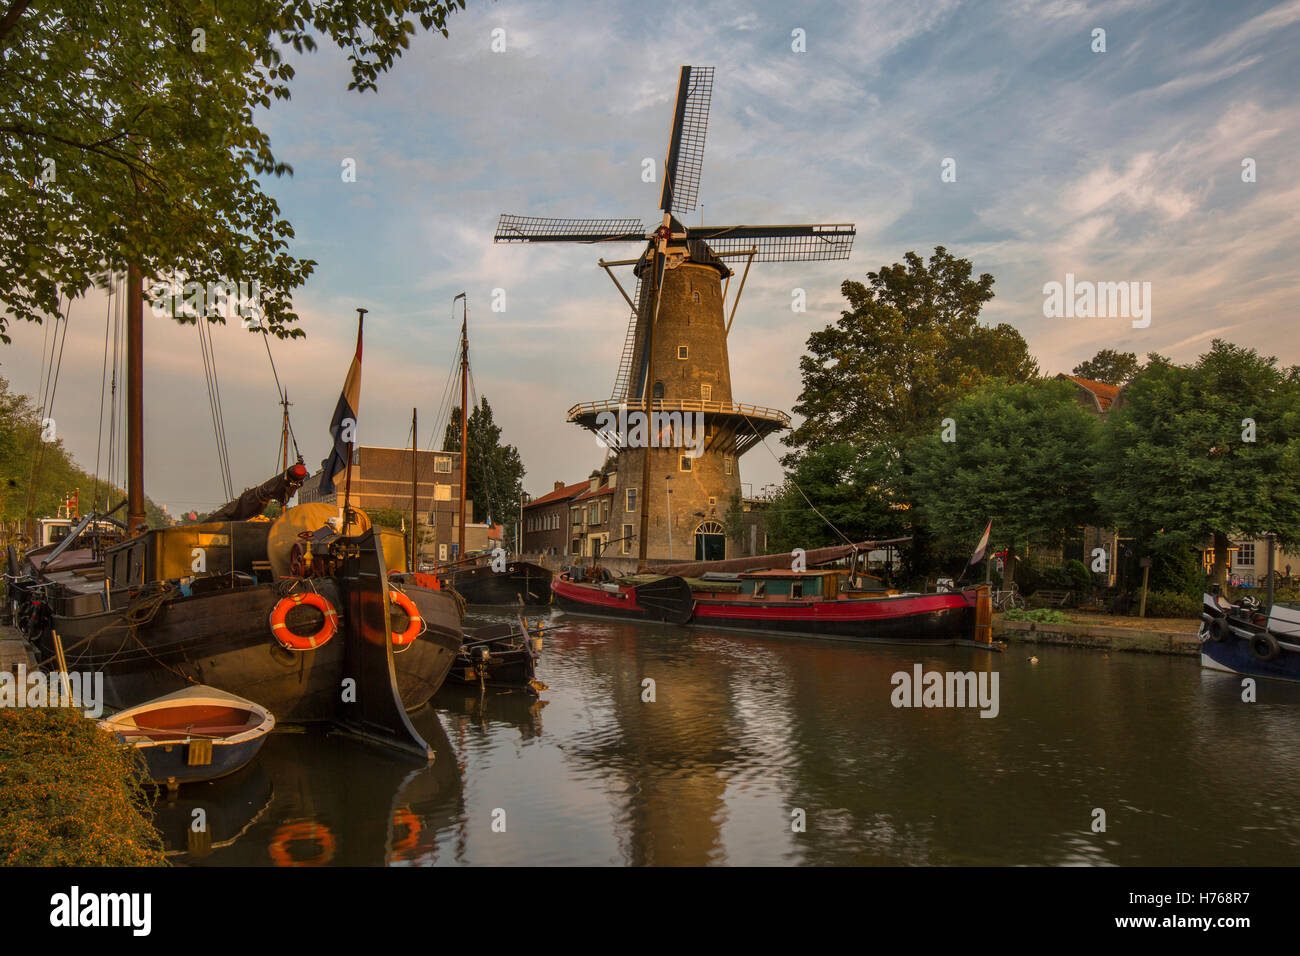 Red Lion Windmill (Molen De Roode Leeuw), Gouda, Holland, Netherlands Stock Photo